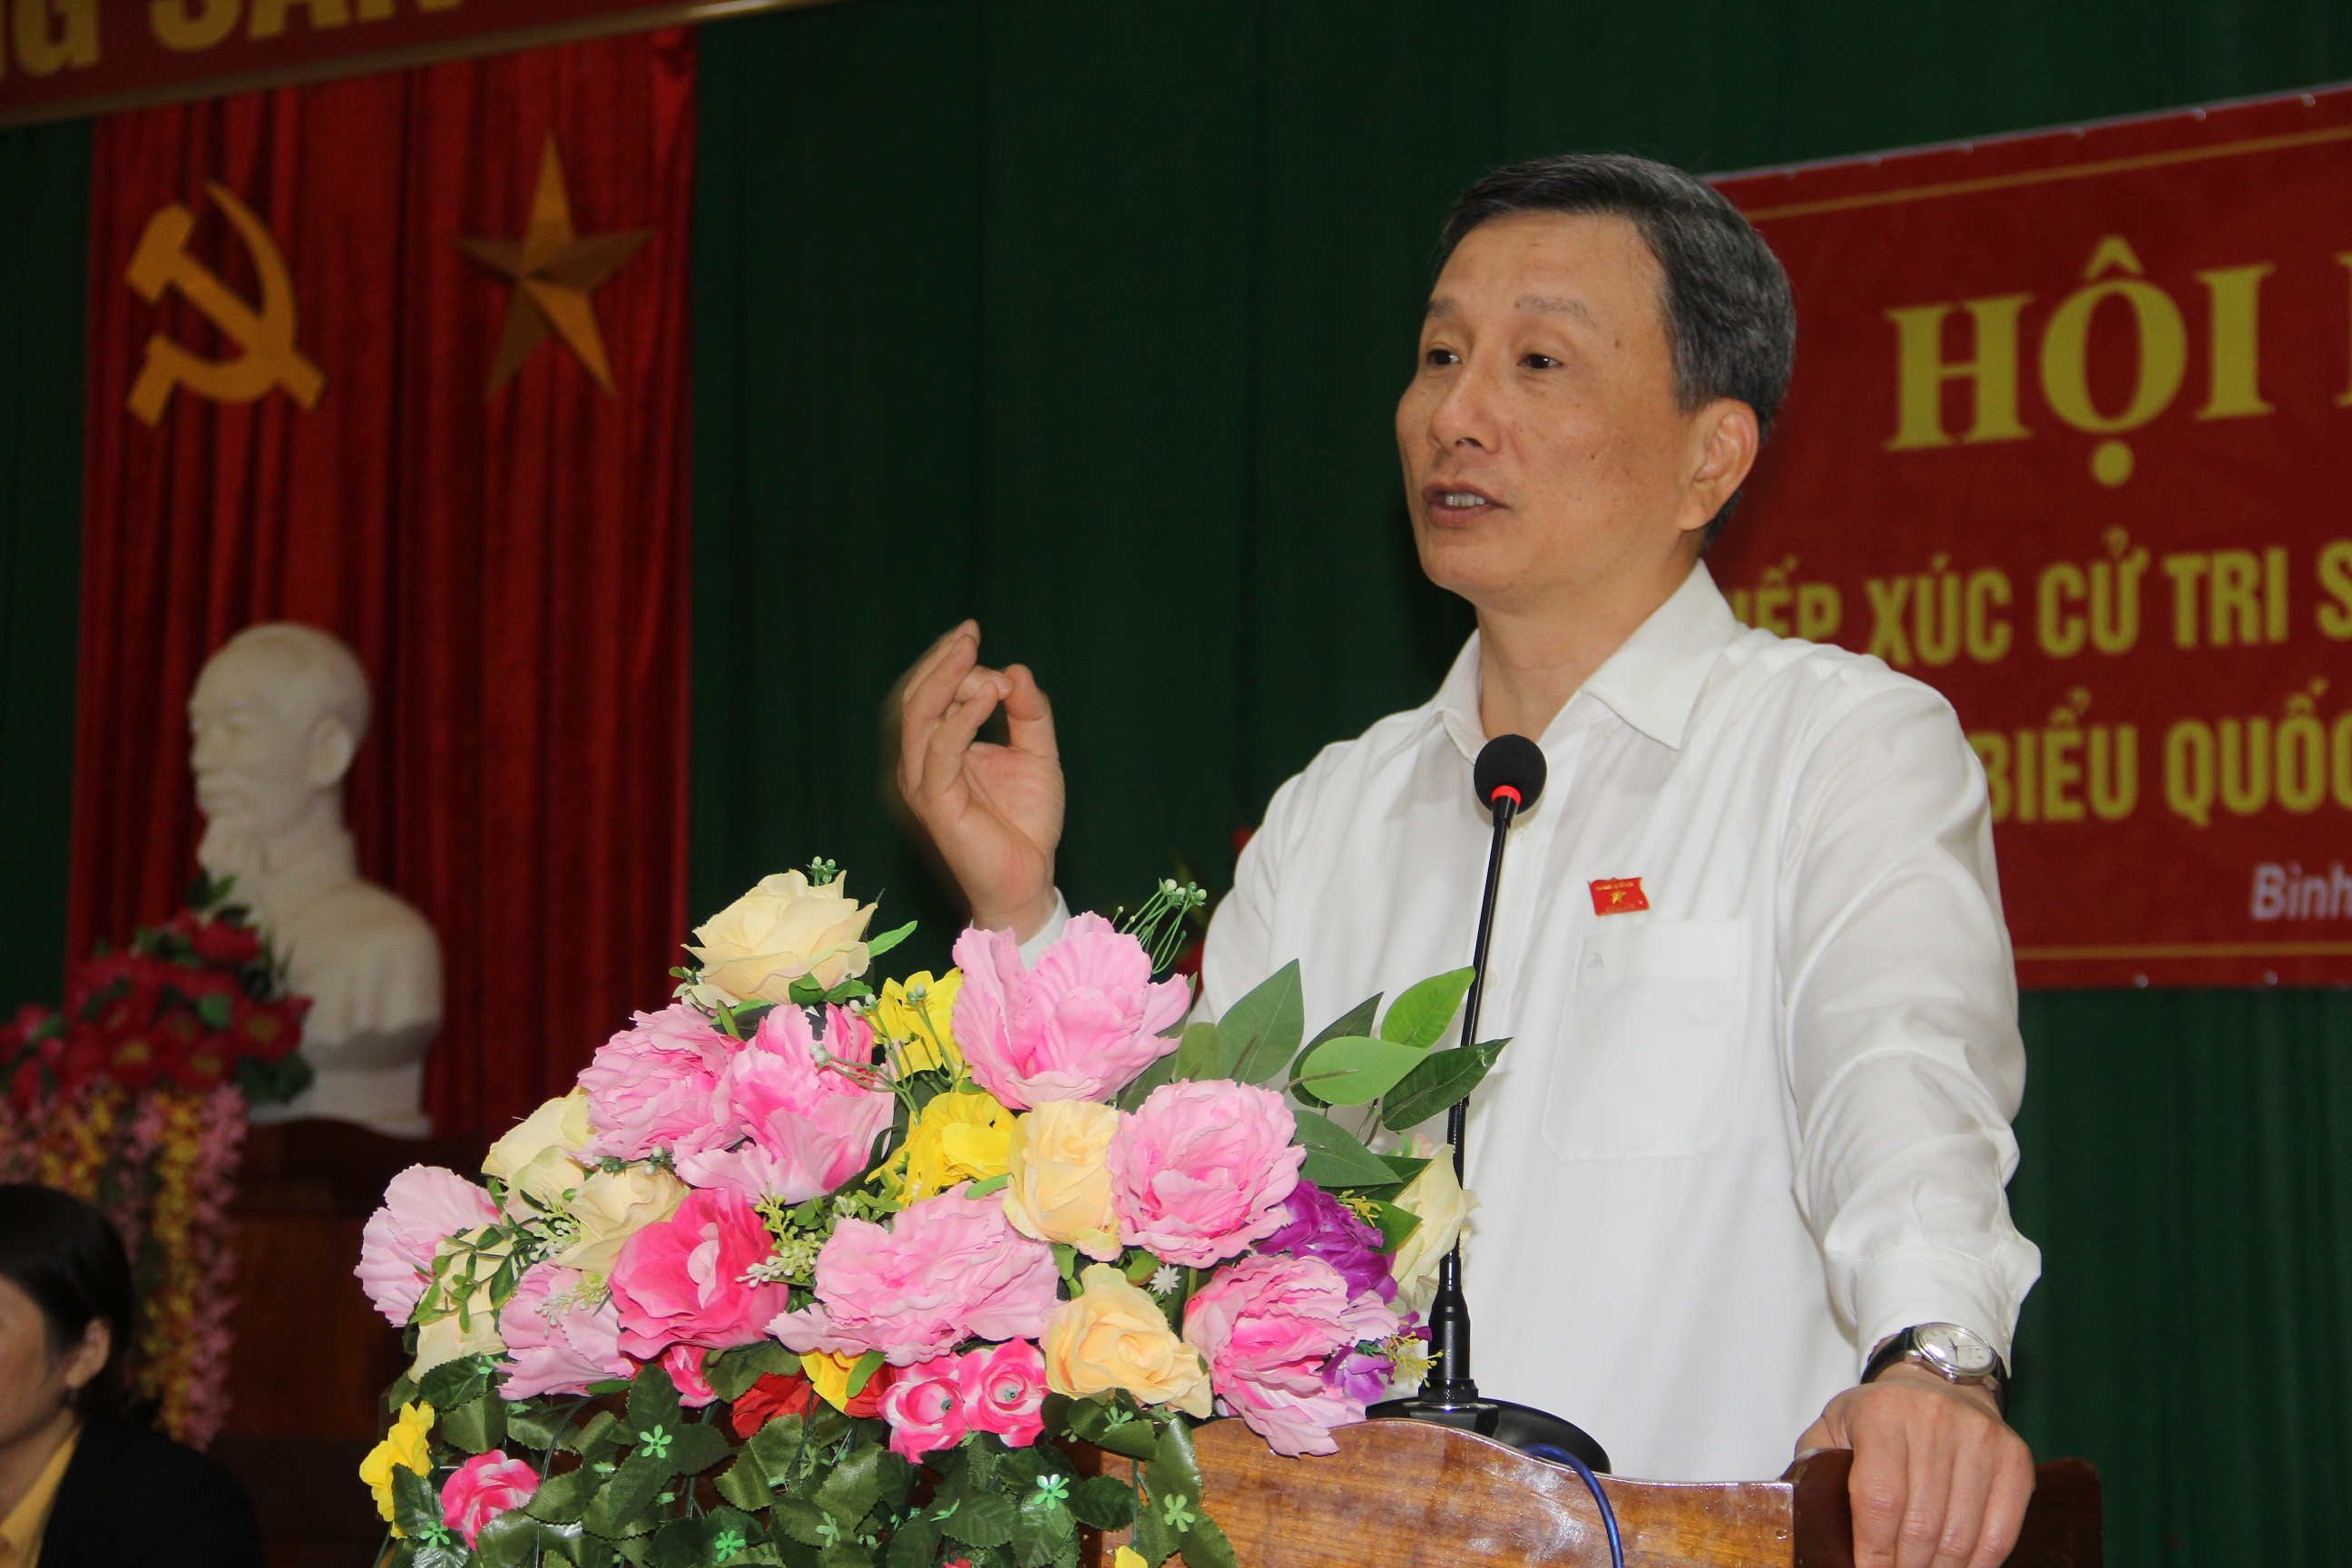 Đại biểu Lê Quang Huy thông báo vắn tắt tới cử tri nội dùng kỳ họp vừa qua. Ảnh: Tiến Hùng